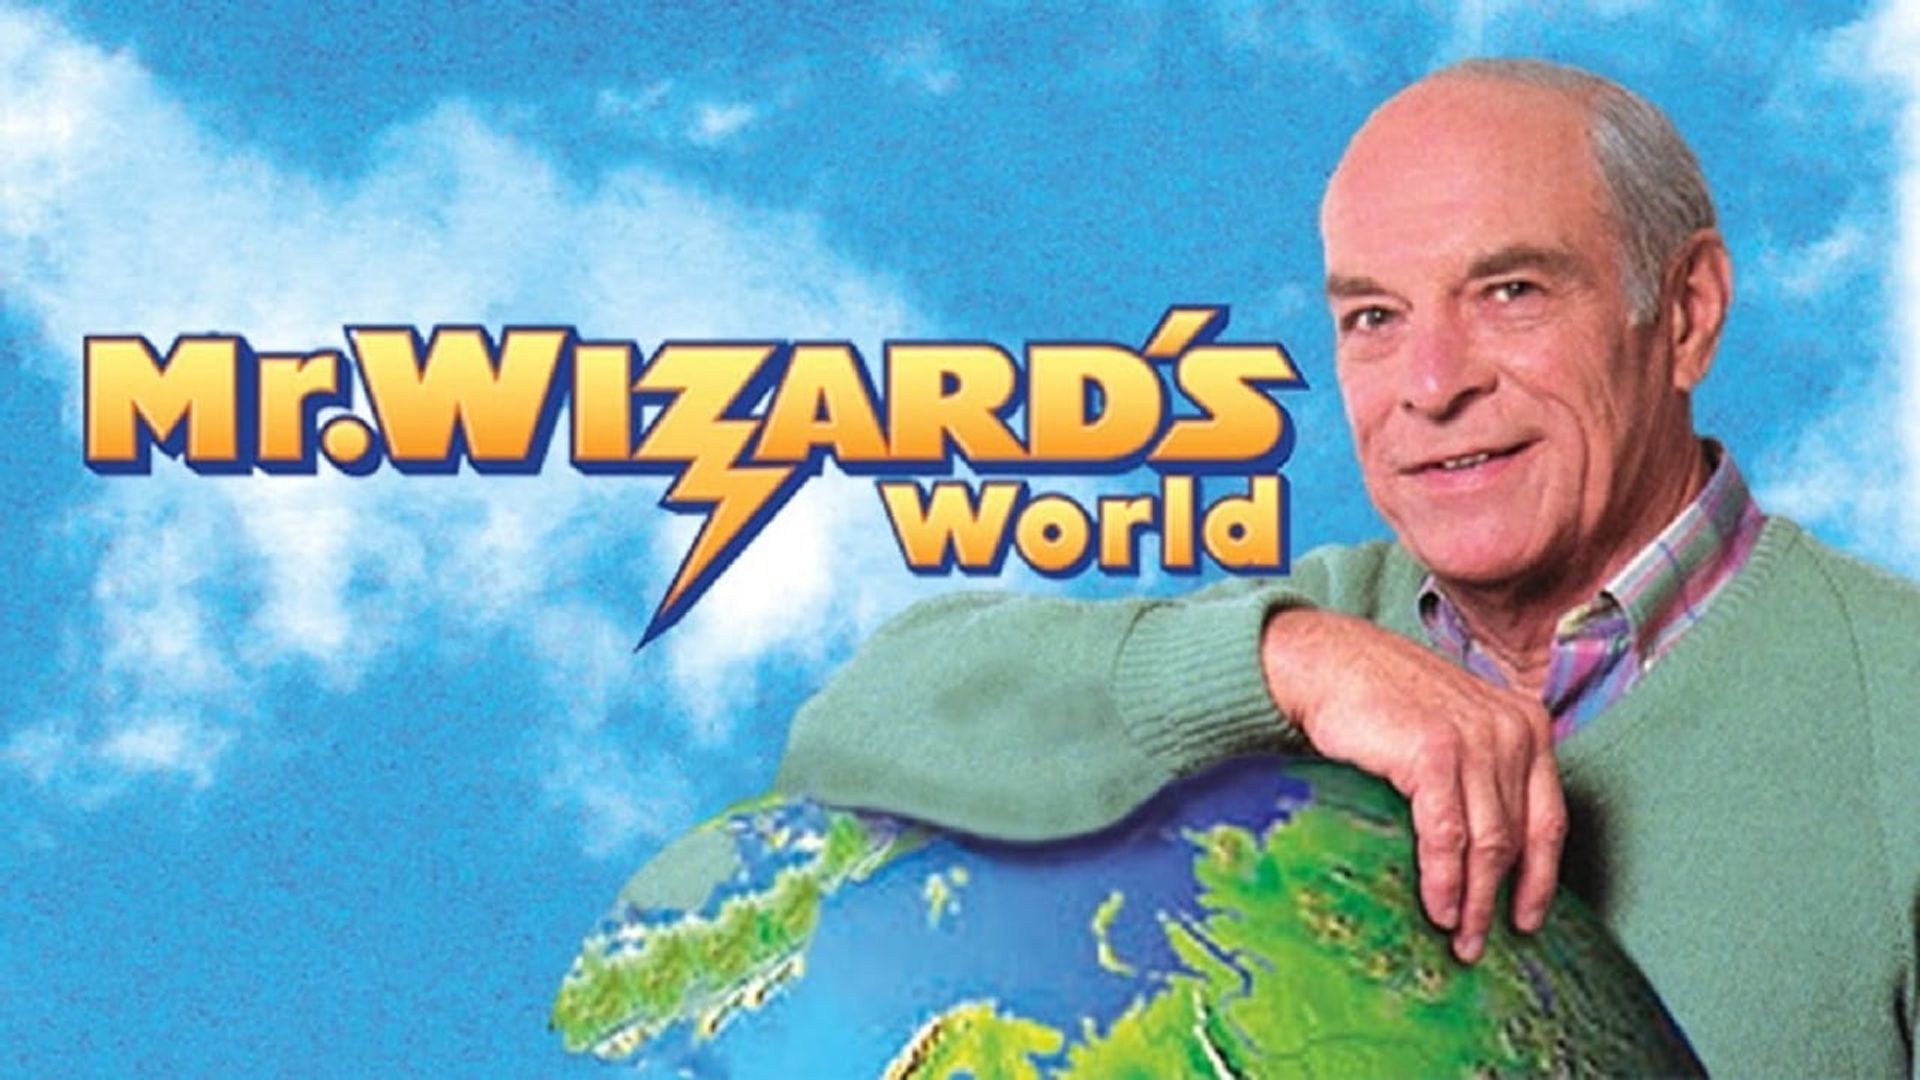 Mr. Wizard's World background